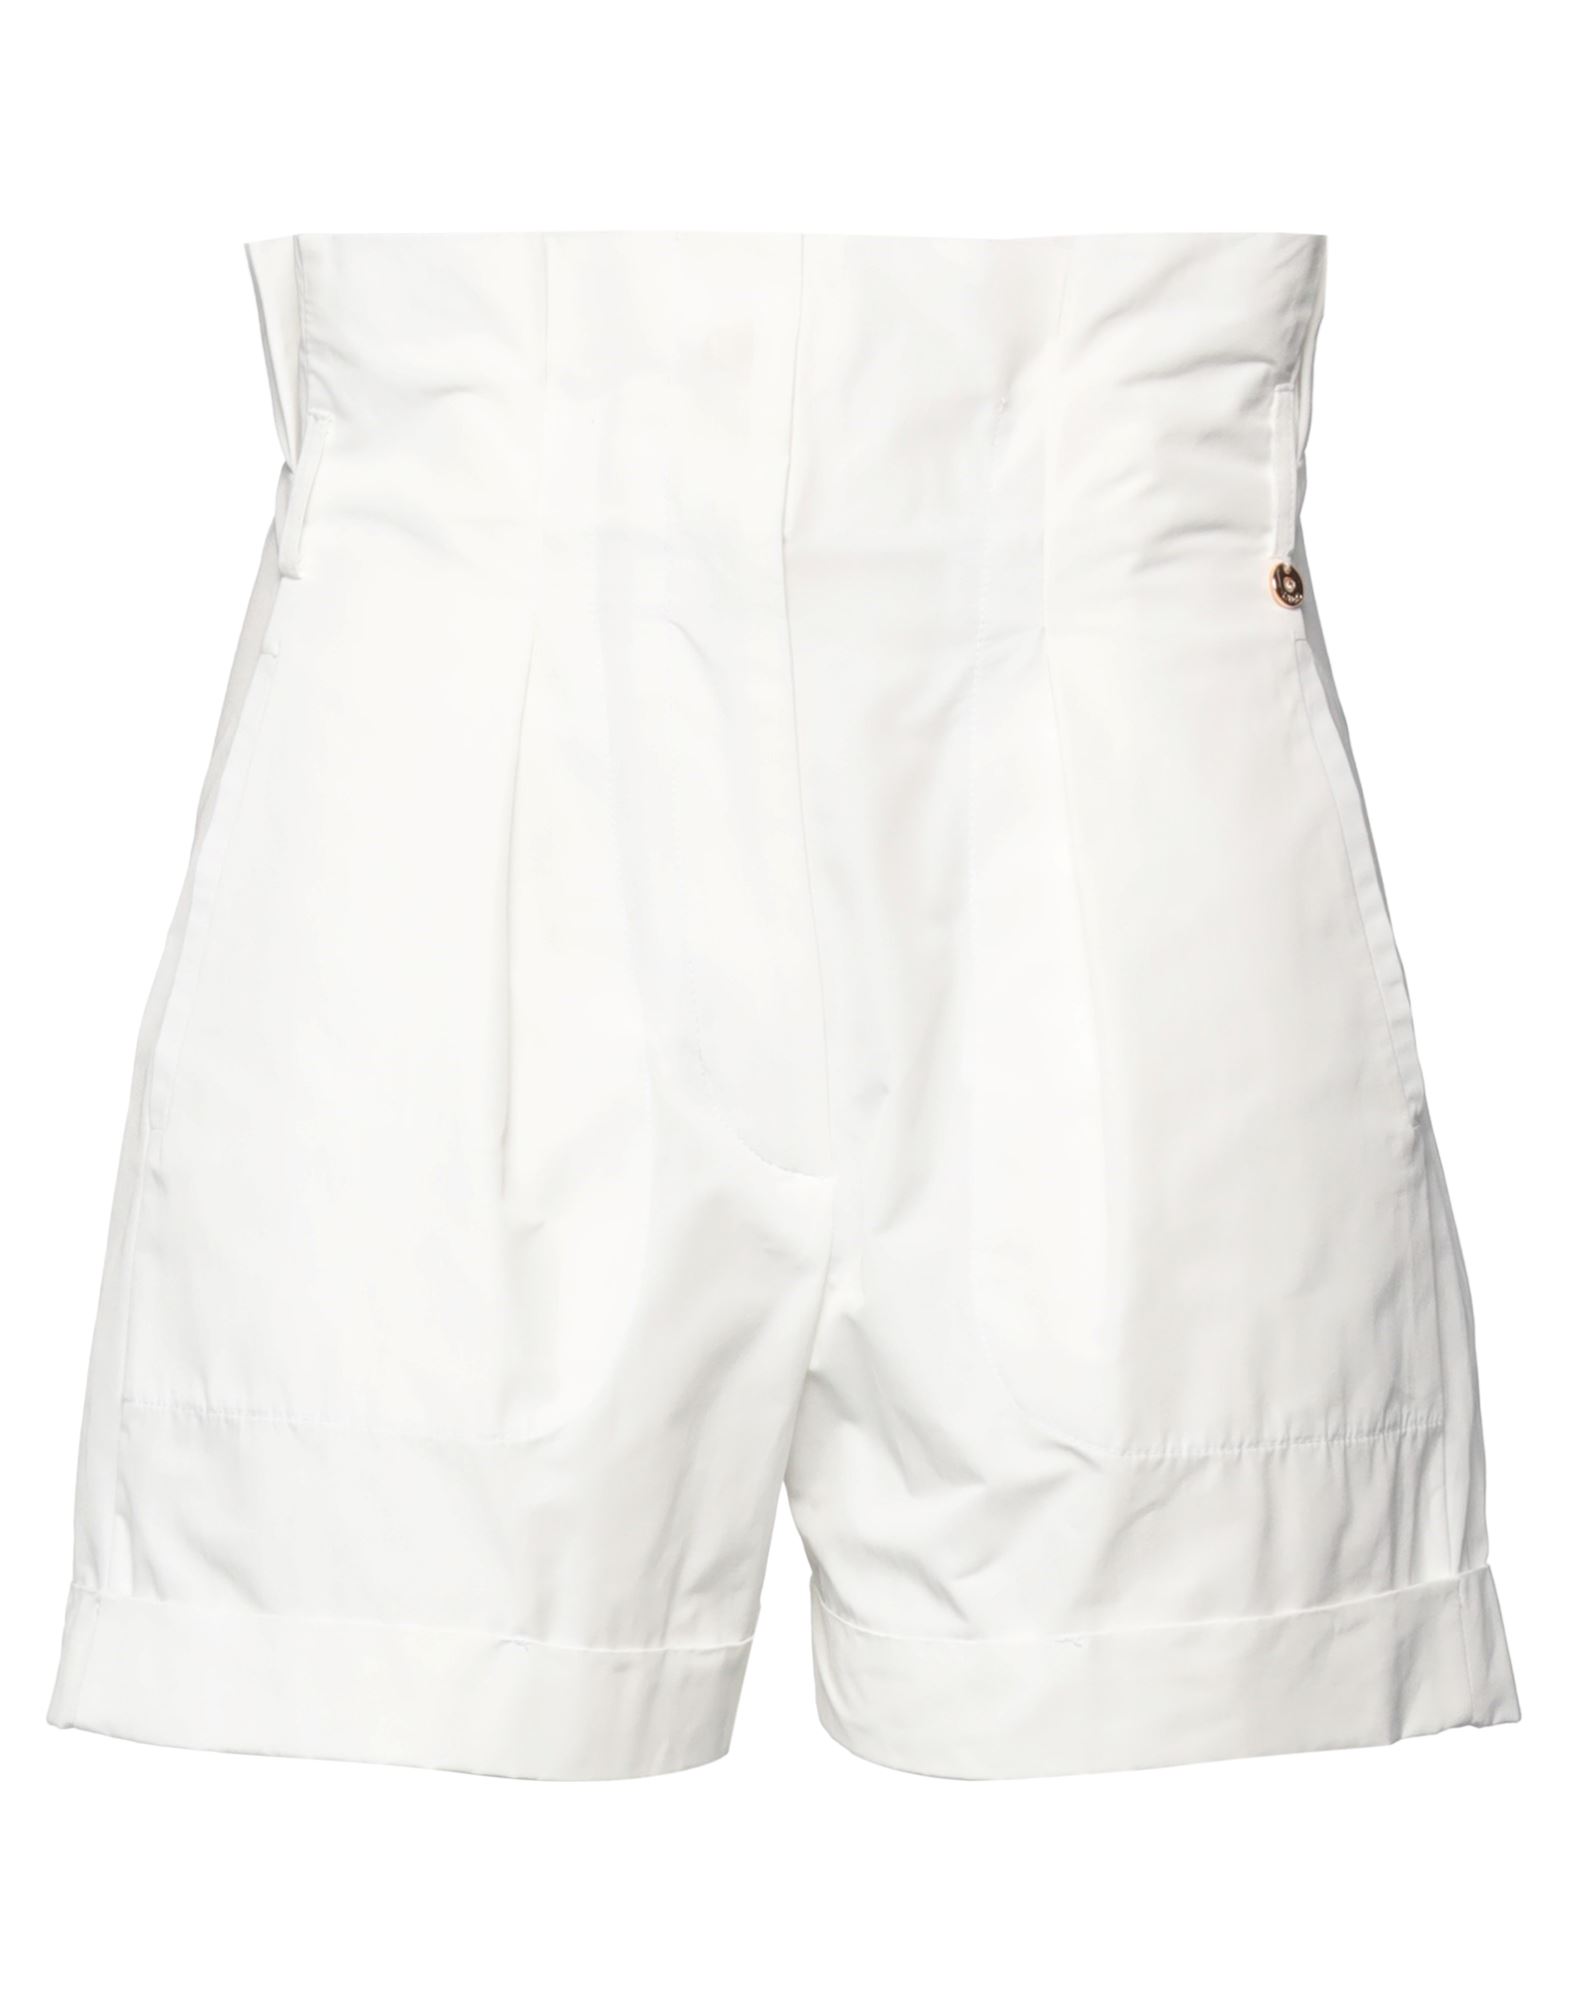 Liu •jo Woman Shorts & Bermuda Shorts White Size 6 Polyester, Cotton